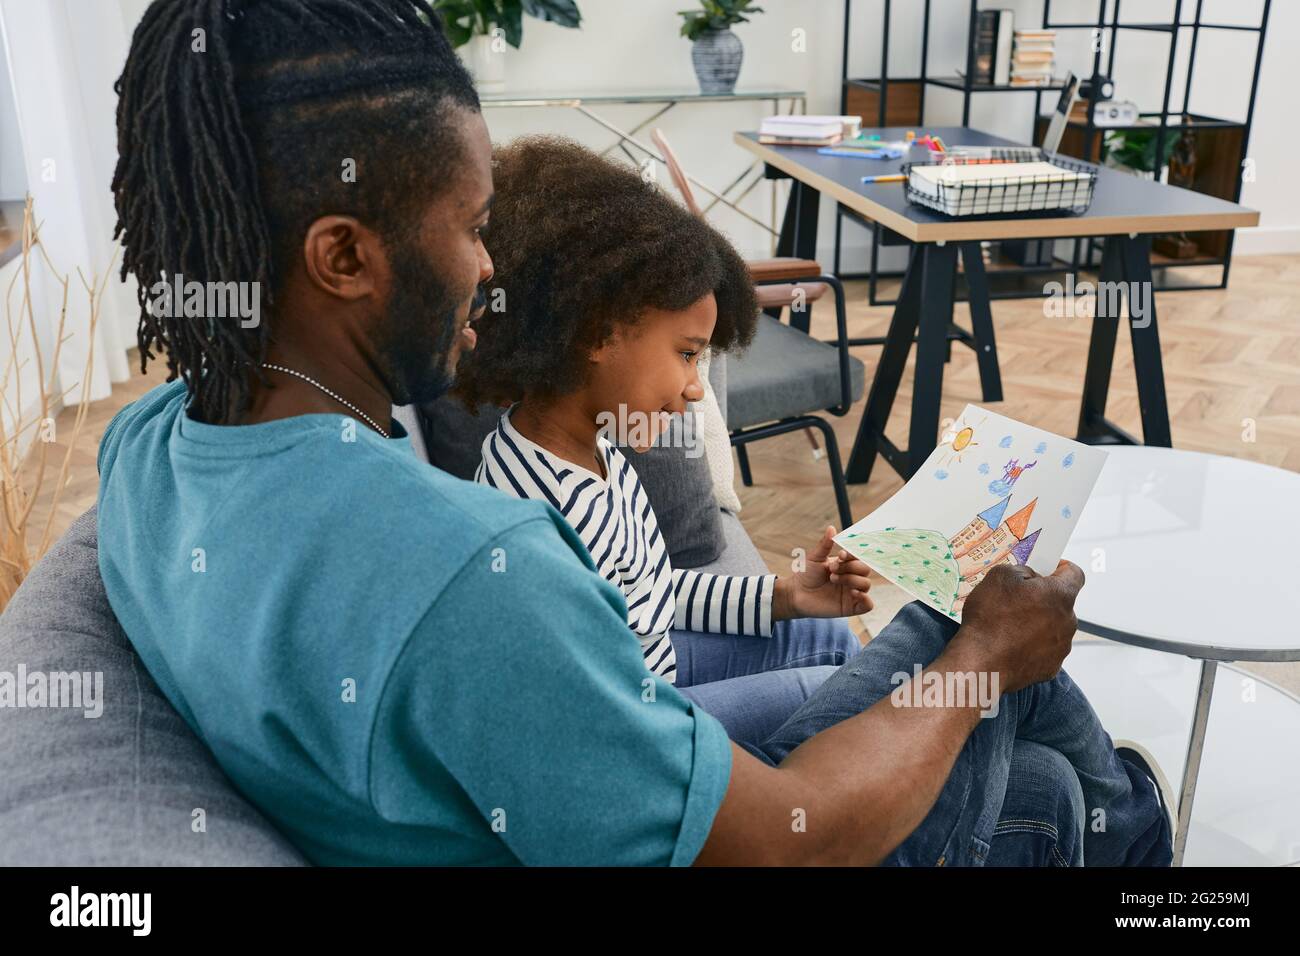 Papa et sa fille passent du temps ensemble le jour du Père. Famille afro-américaine assise sur un canapé et regardant le dessin de l'enfant, la convivialité Banque D'Images